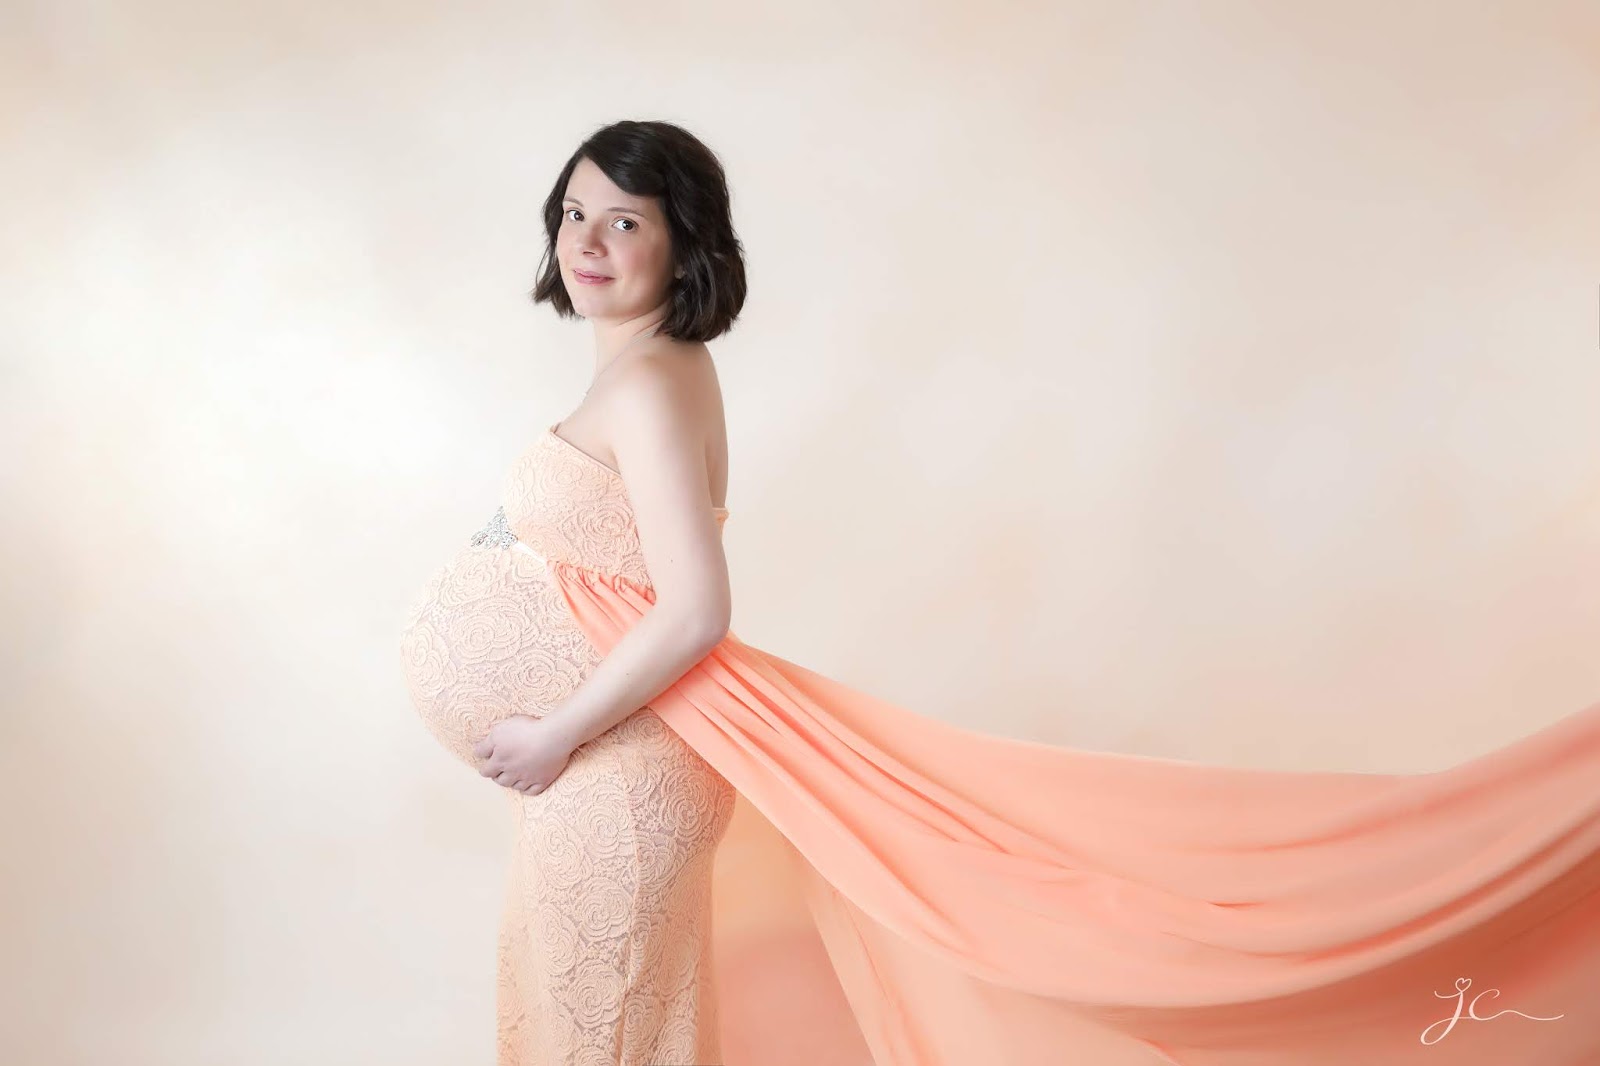 shooting photo grossesse enceinte professionnel studio maternité photographe julie charles les gommettes de melo 